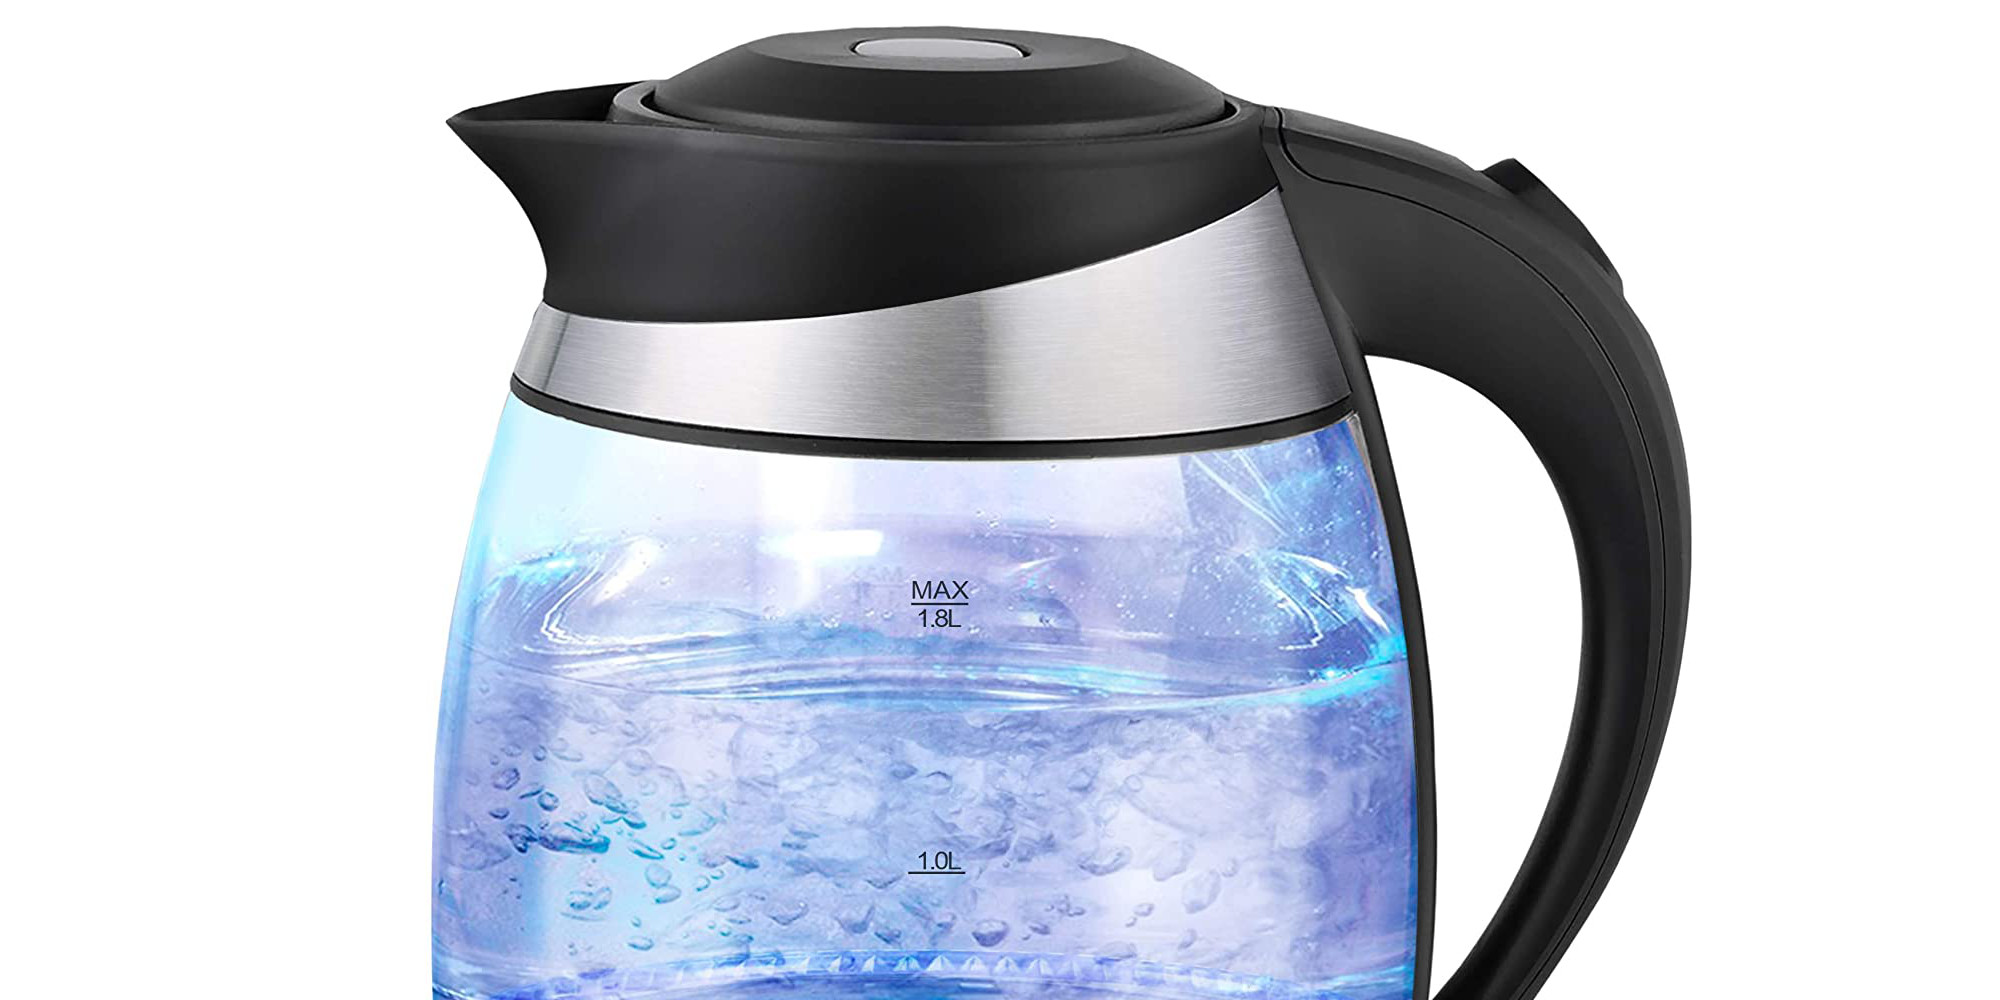 Home: Ovente LED glass kettle $25 (Reg. $30+), more